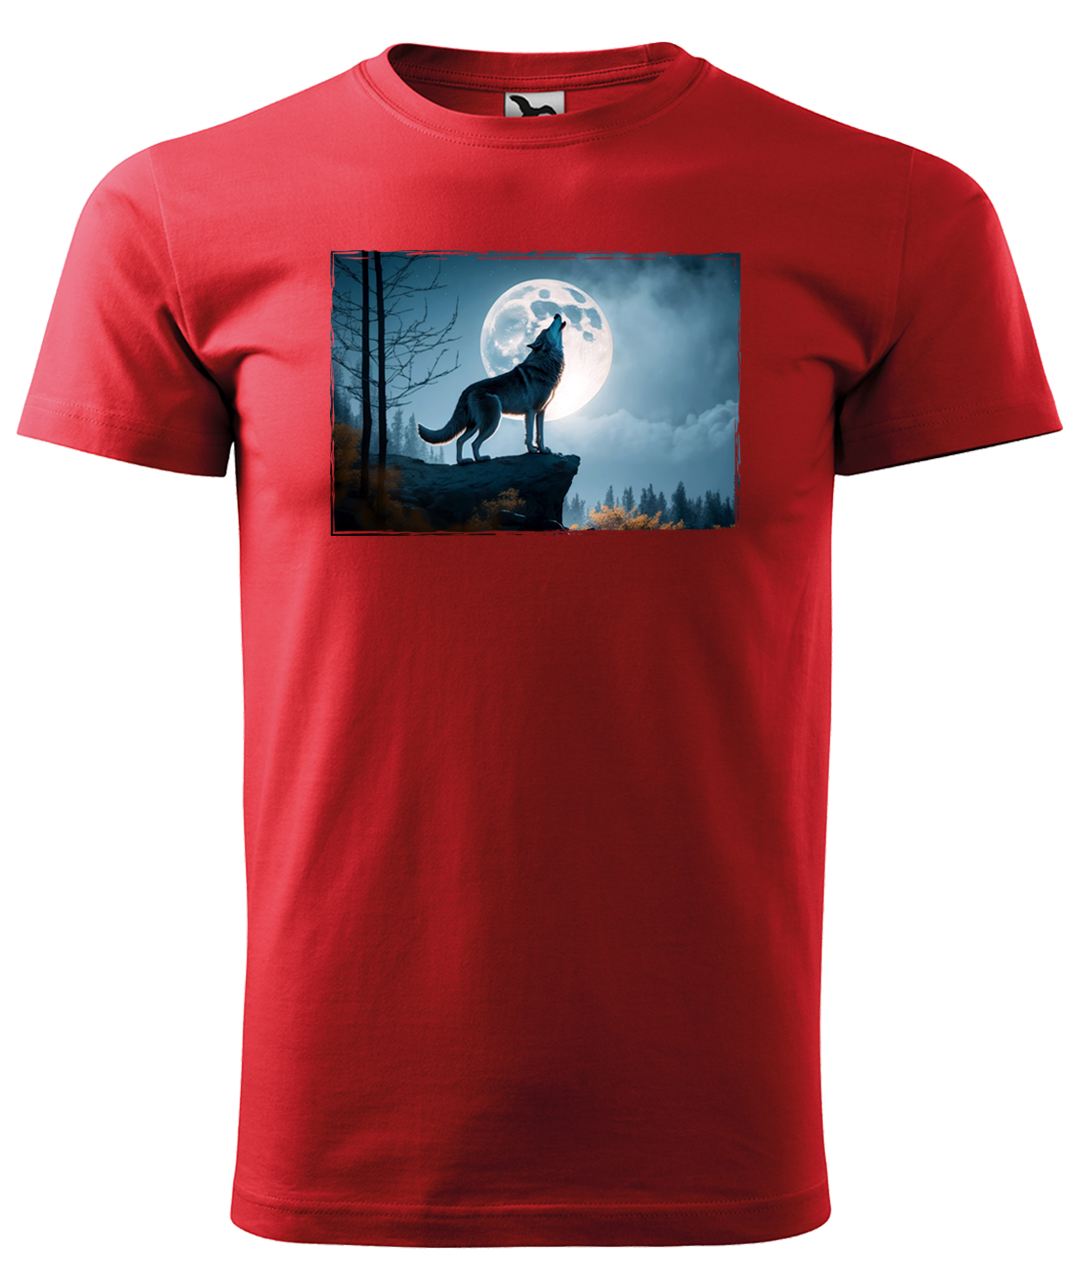 Dětské tričko s vlkem - Vyjící vlk Velikost: 8 let / 134 cm, Barva: Červená (07)